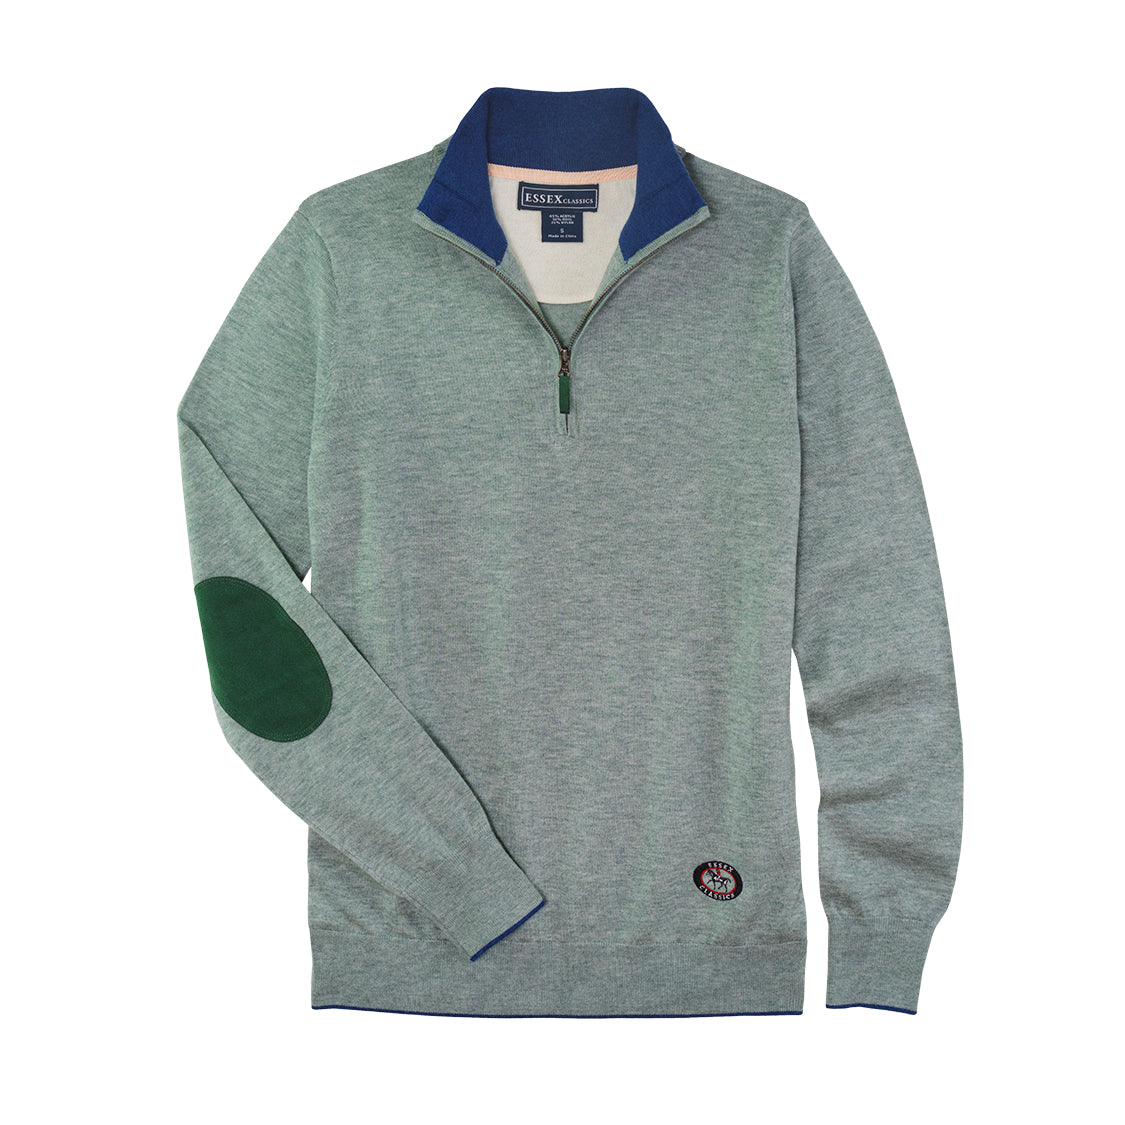 Essex Classics “Trey” Quarter Zip Sweater